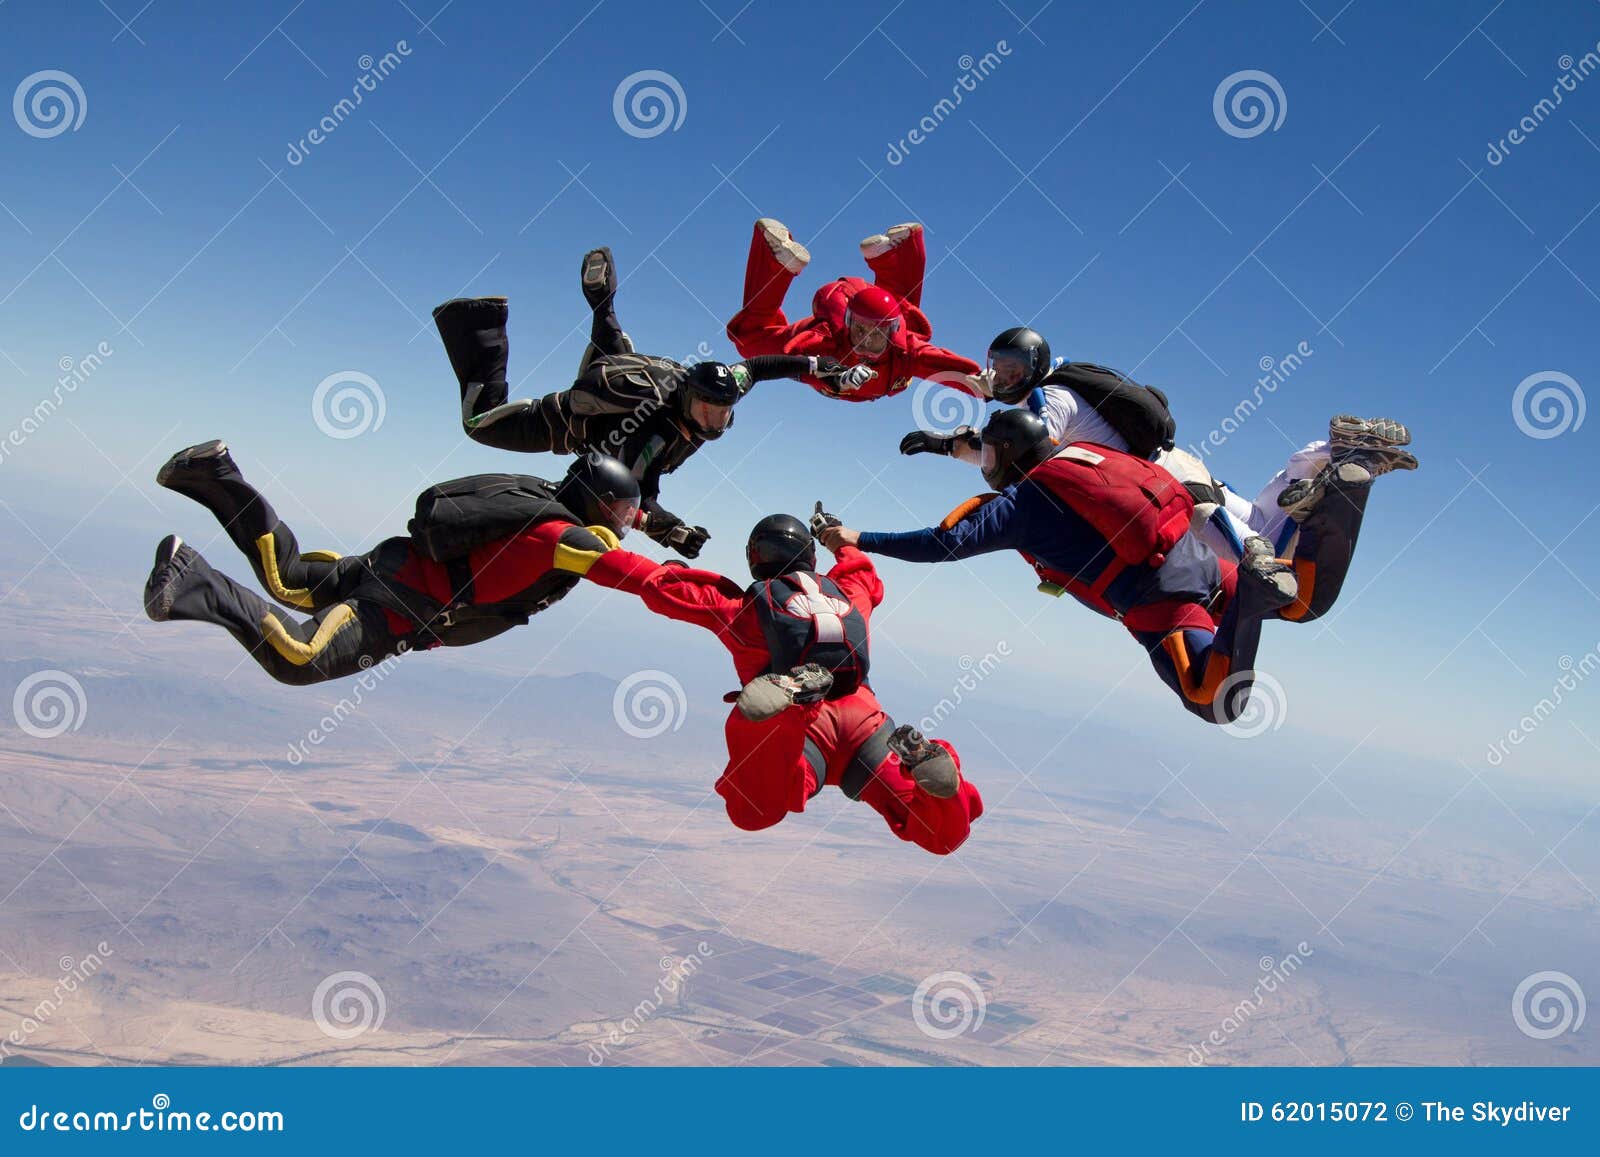 skydiving people teamwork